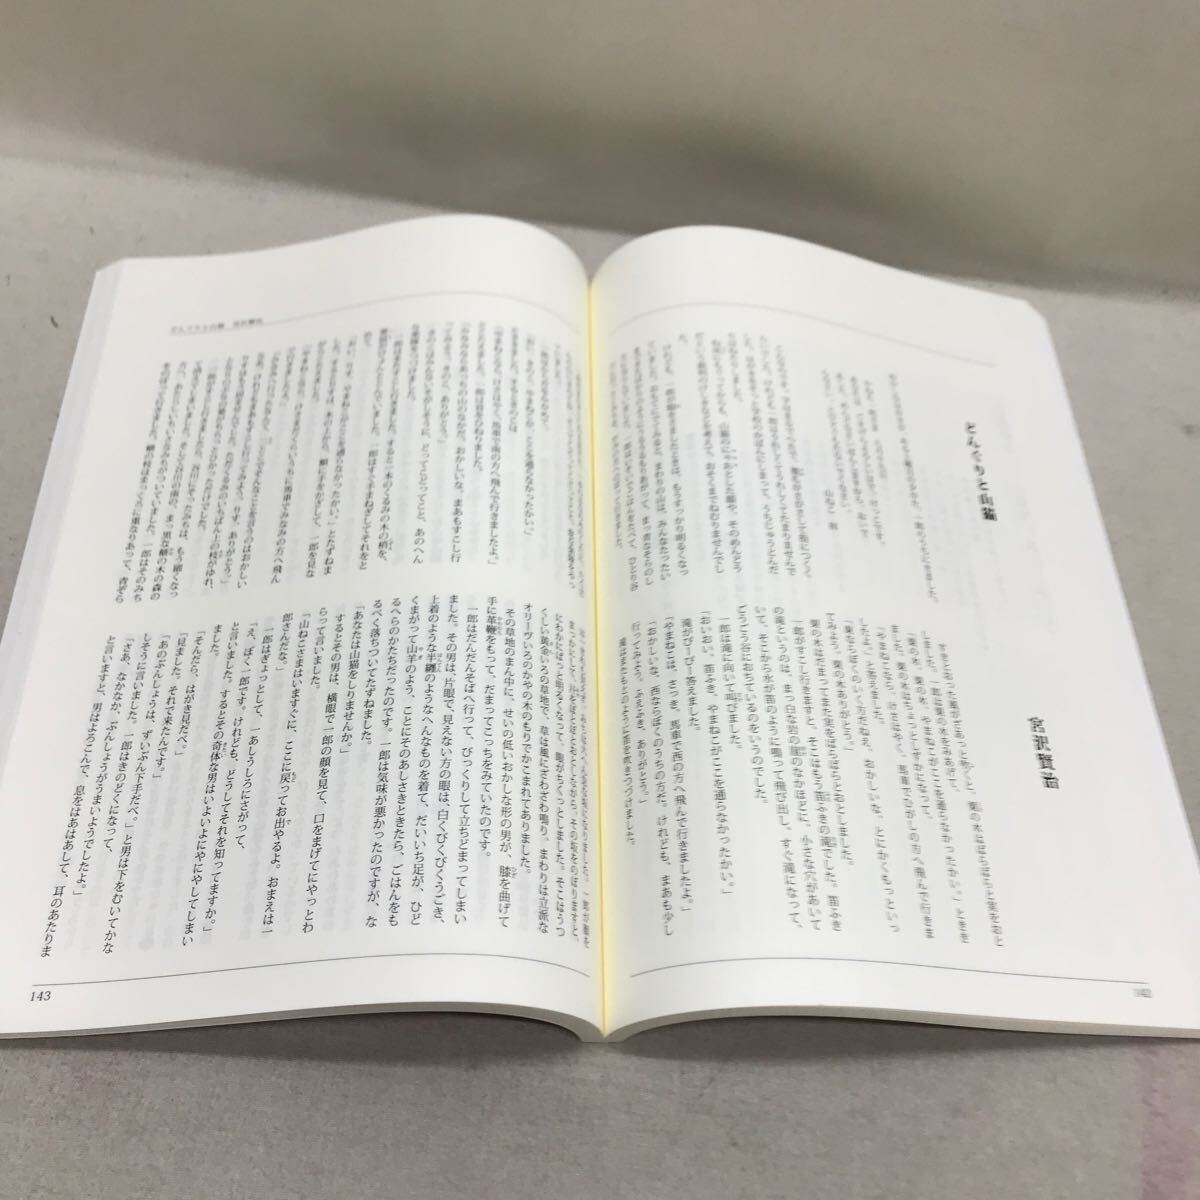 [3S02-311] бесплатная доставка You can ... приятный японский шедевр текст 2 шт. + брошюра + плеер рабочее состояние подтверждено 